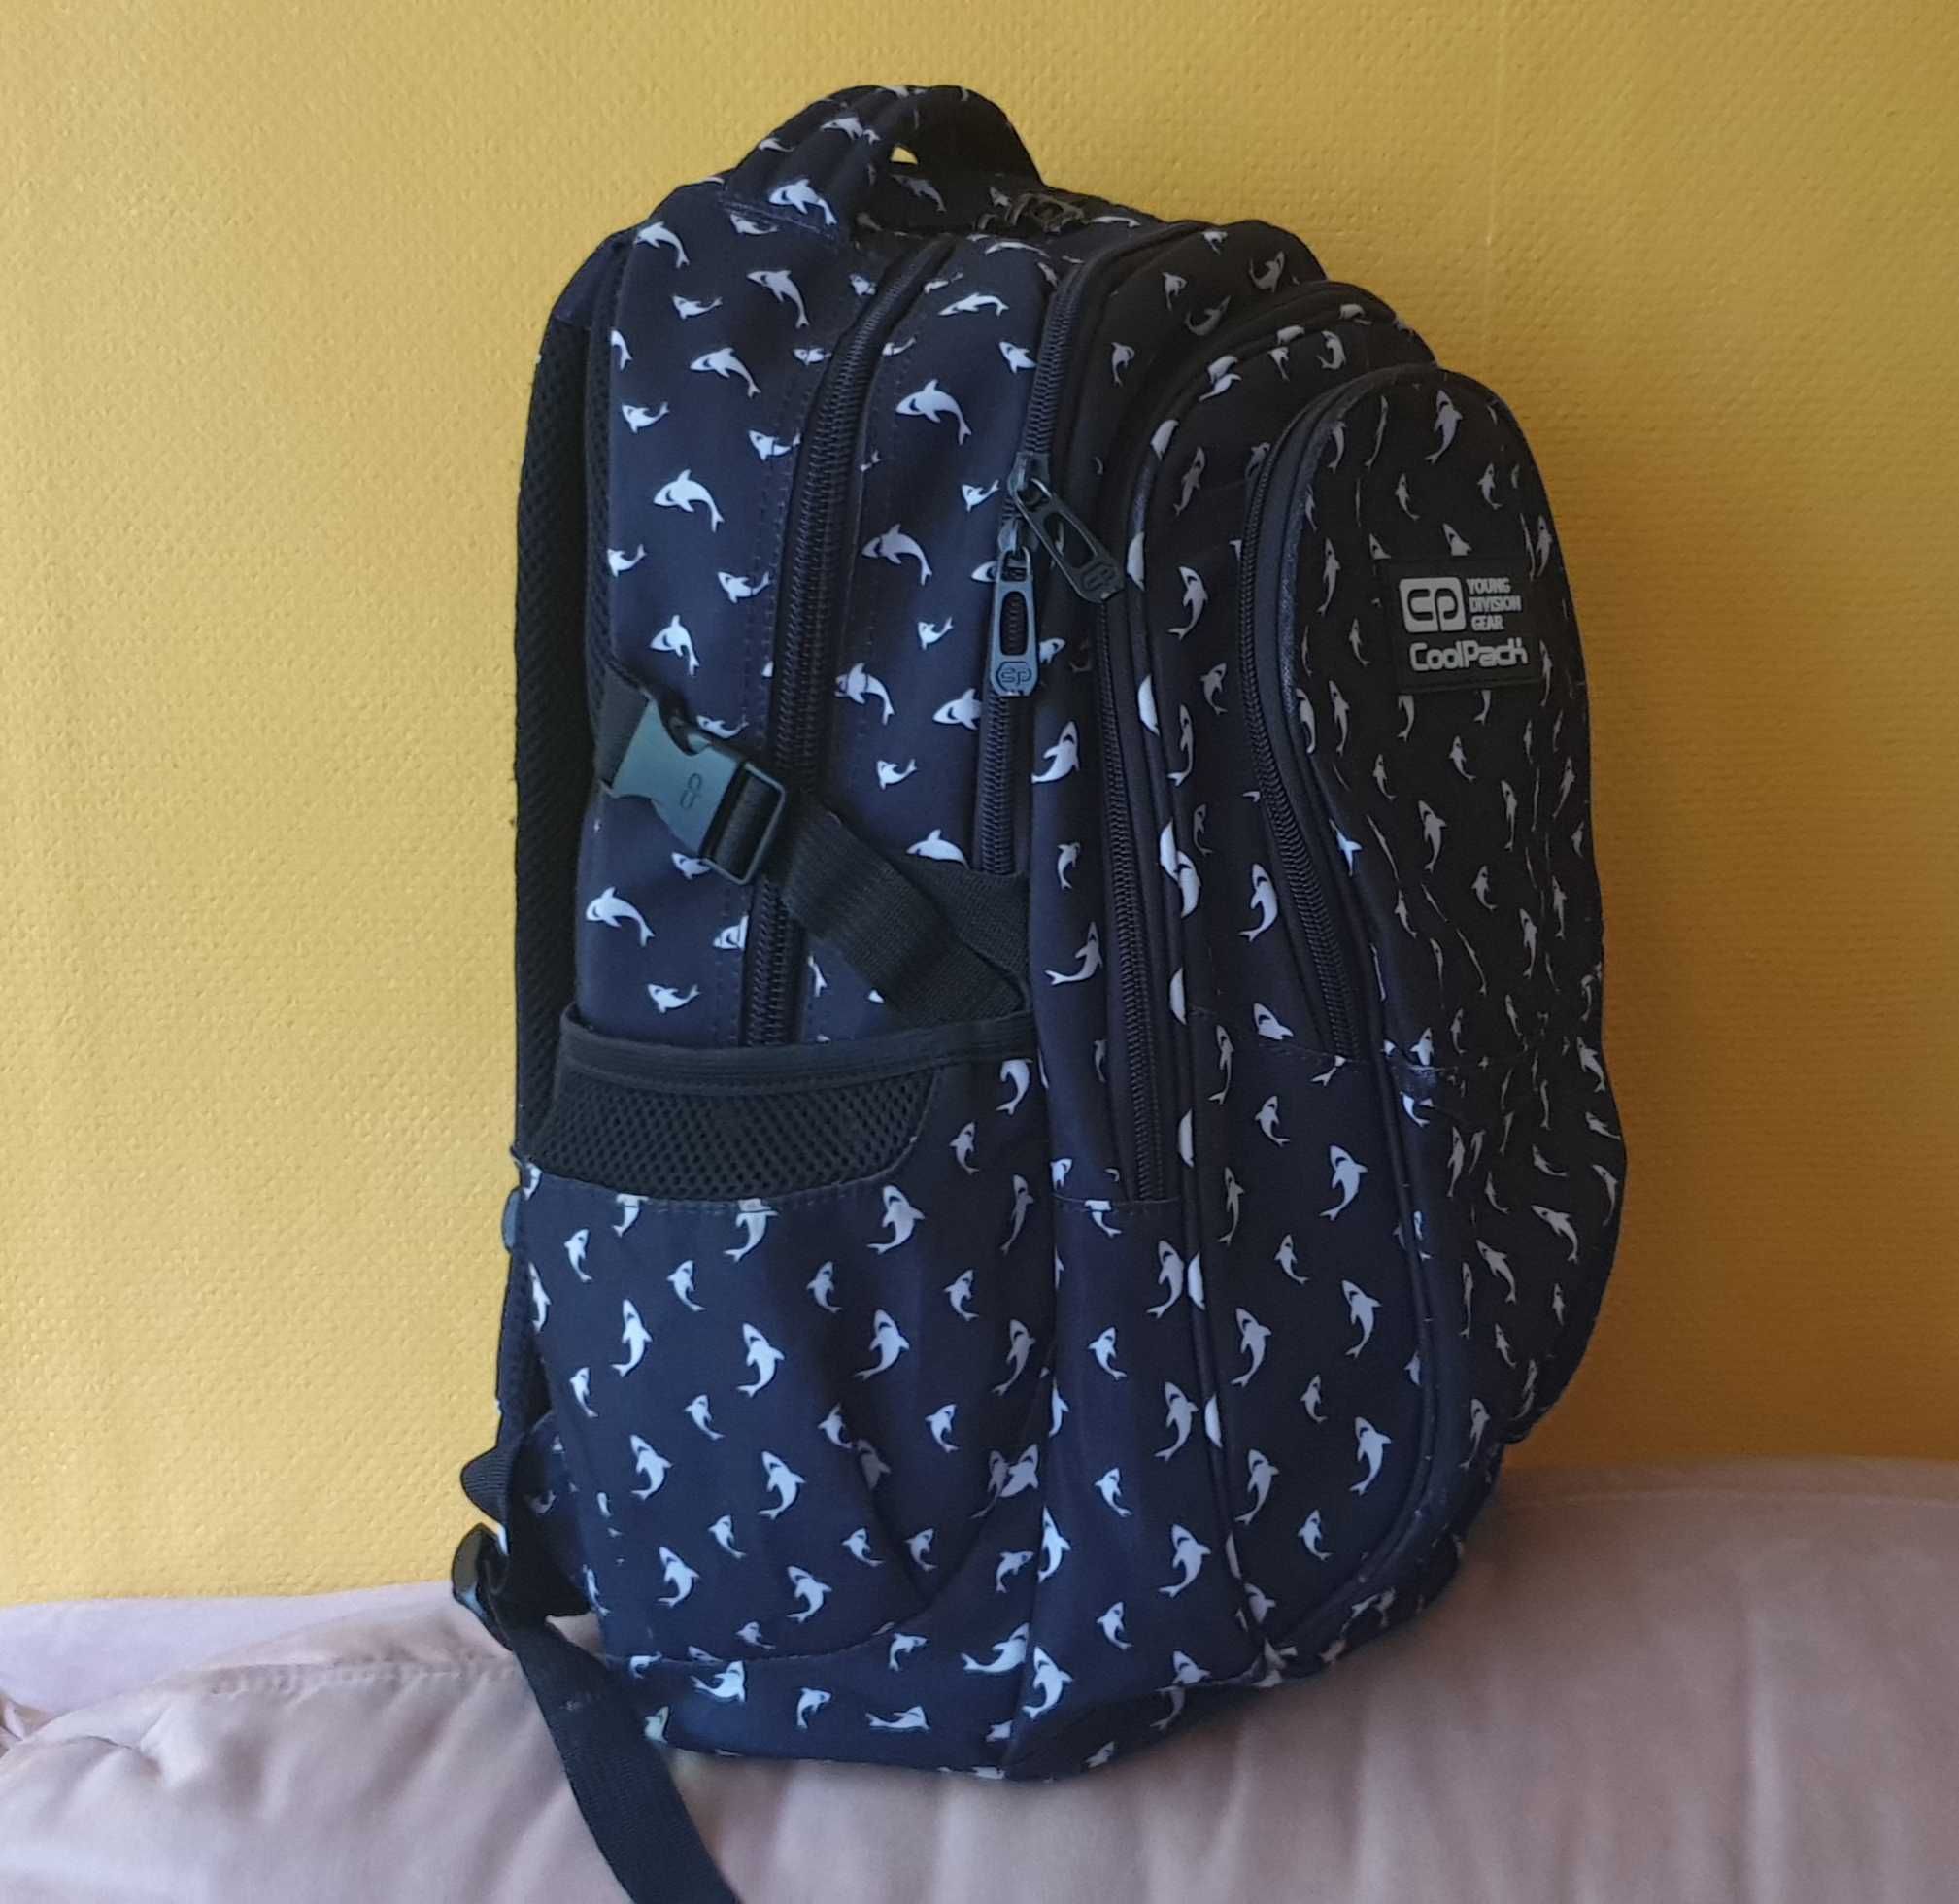 Oryginalny plecak CoolPack